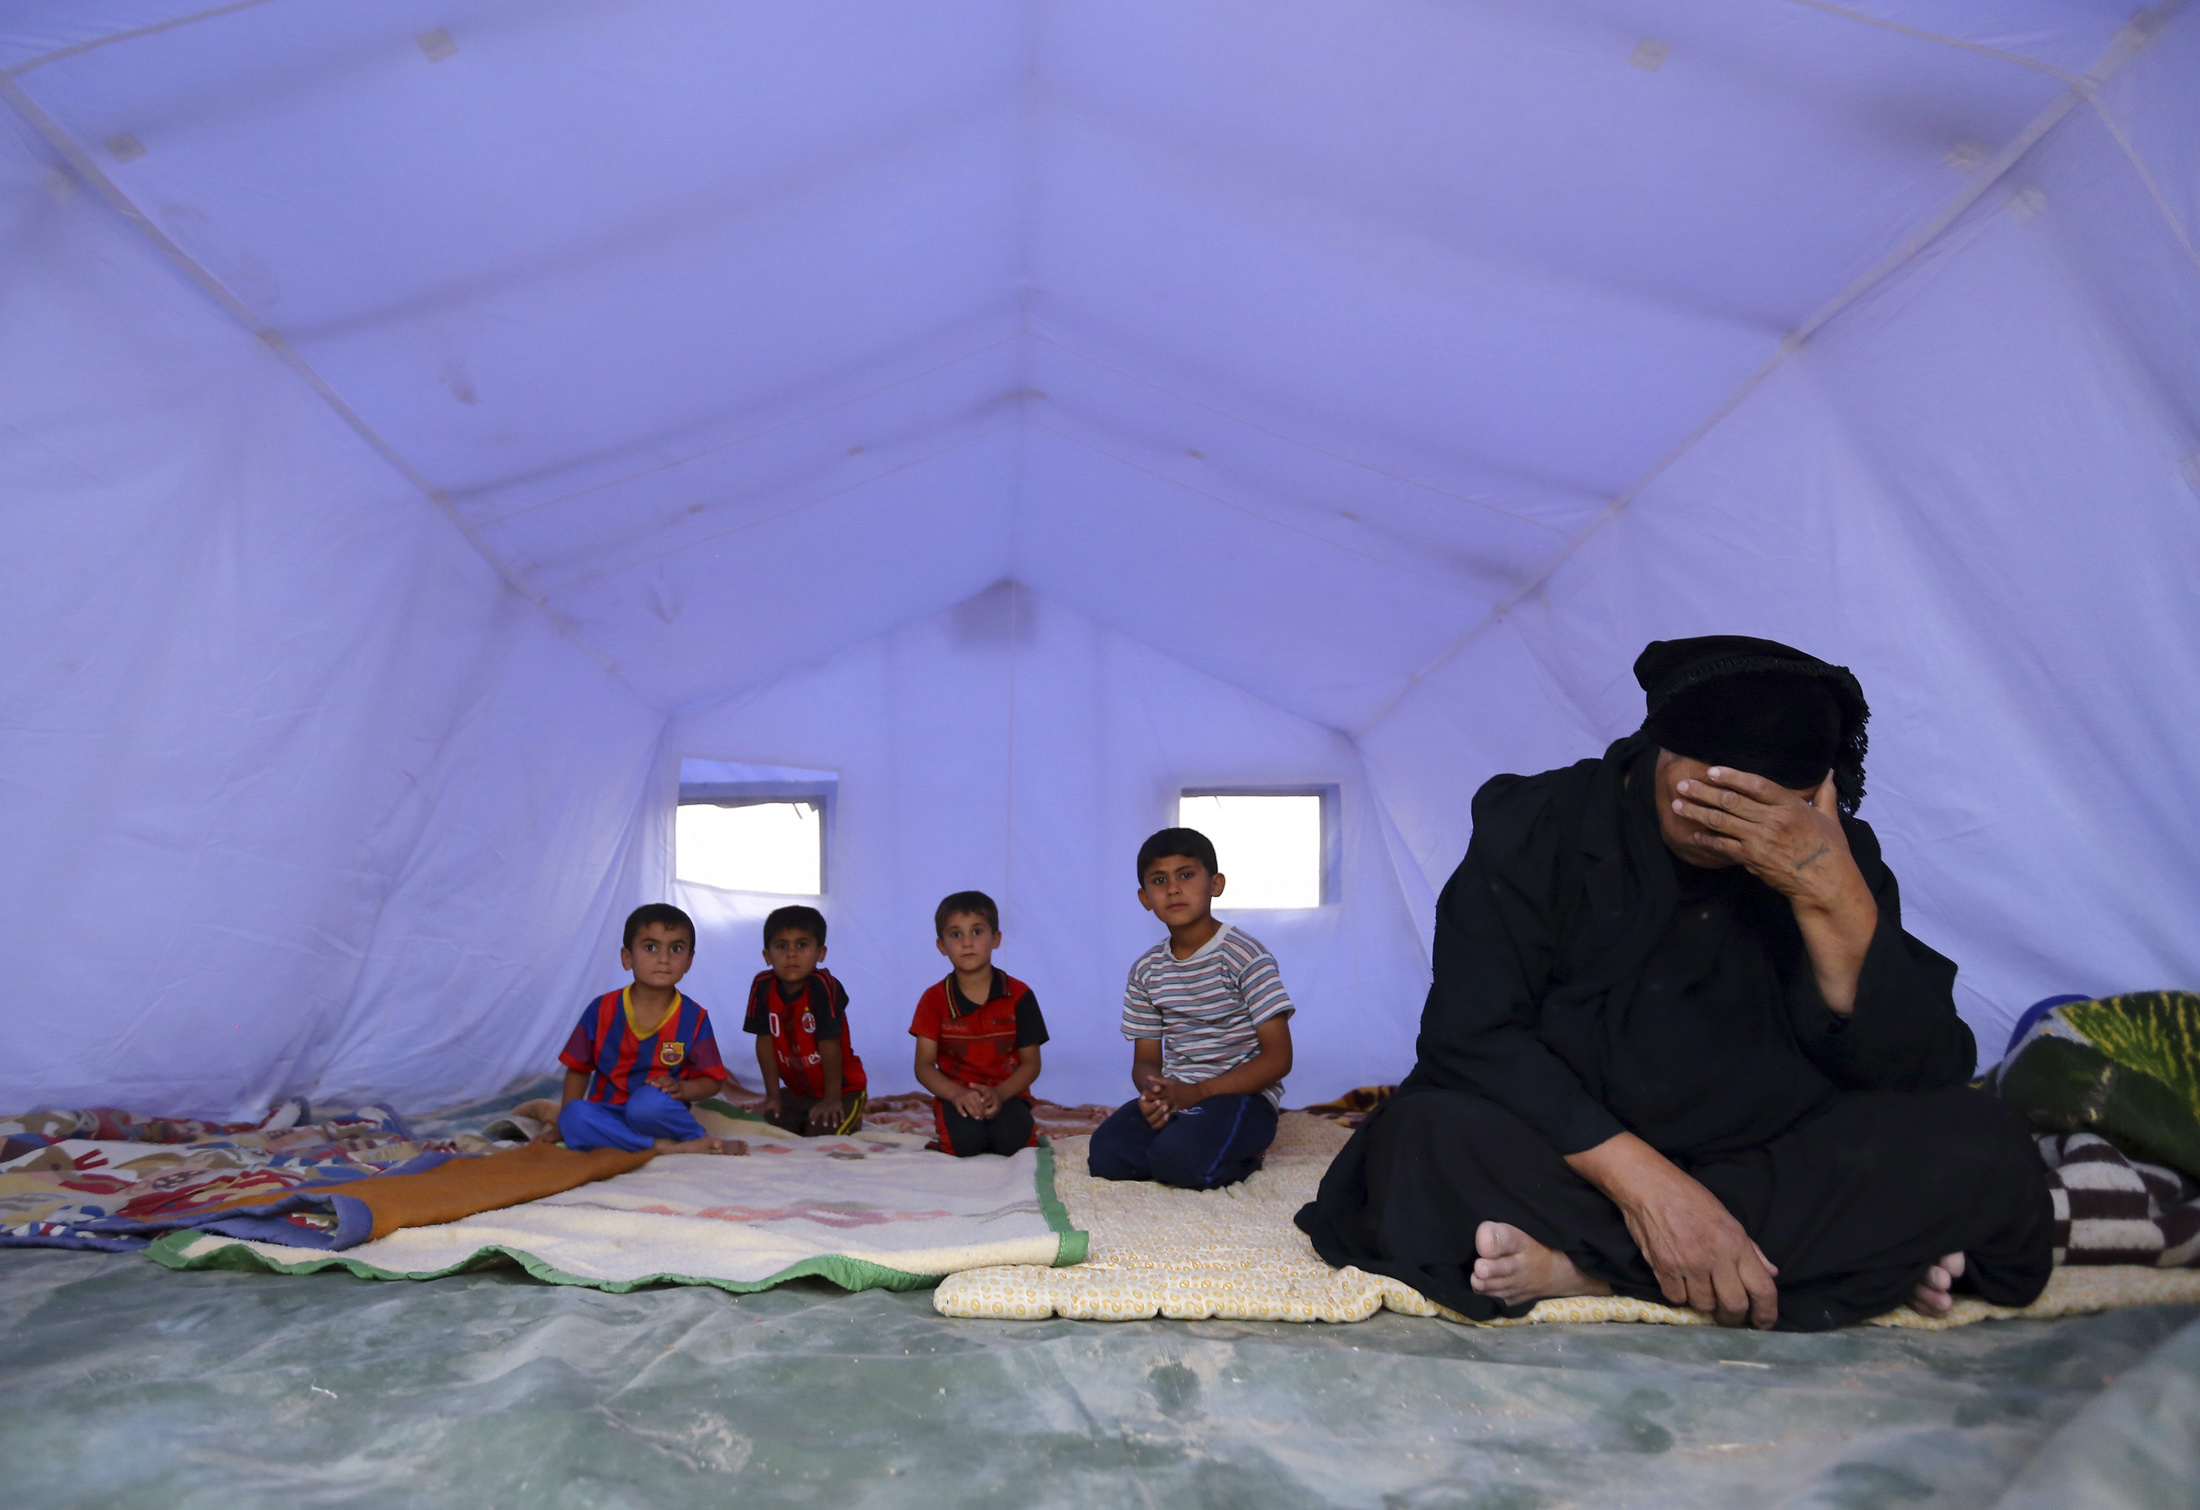 أسرة عراقية هاربة من العنف بالموصل عقب سقوط المدينة بيد داعش، تجلس داخل خيمة بمركز إيواء على مشارف مدينة أربيل بكردستان العراق، 12 يونيو 2014. روبترز، صحفي محلي.